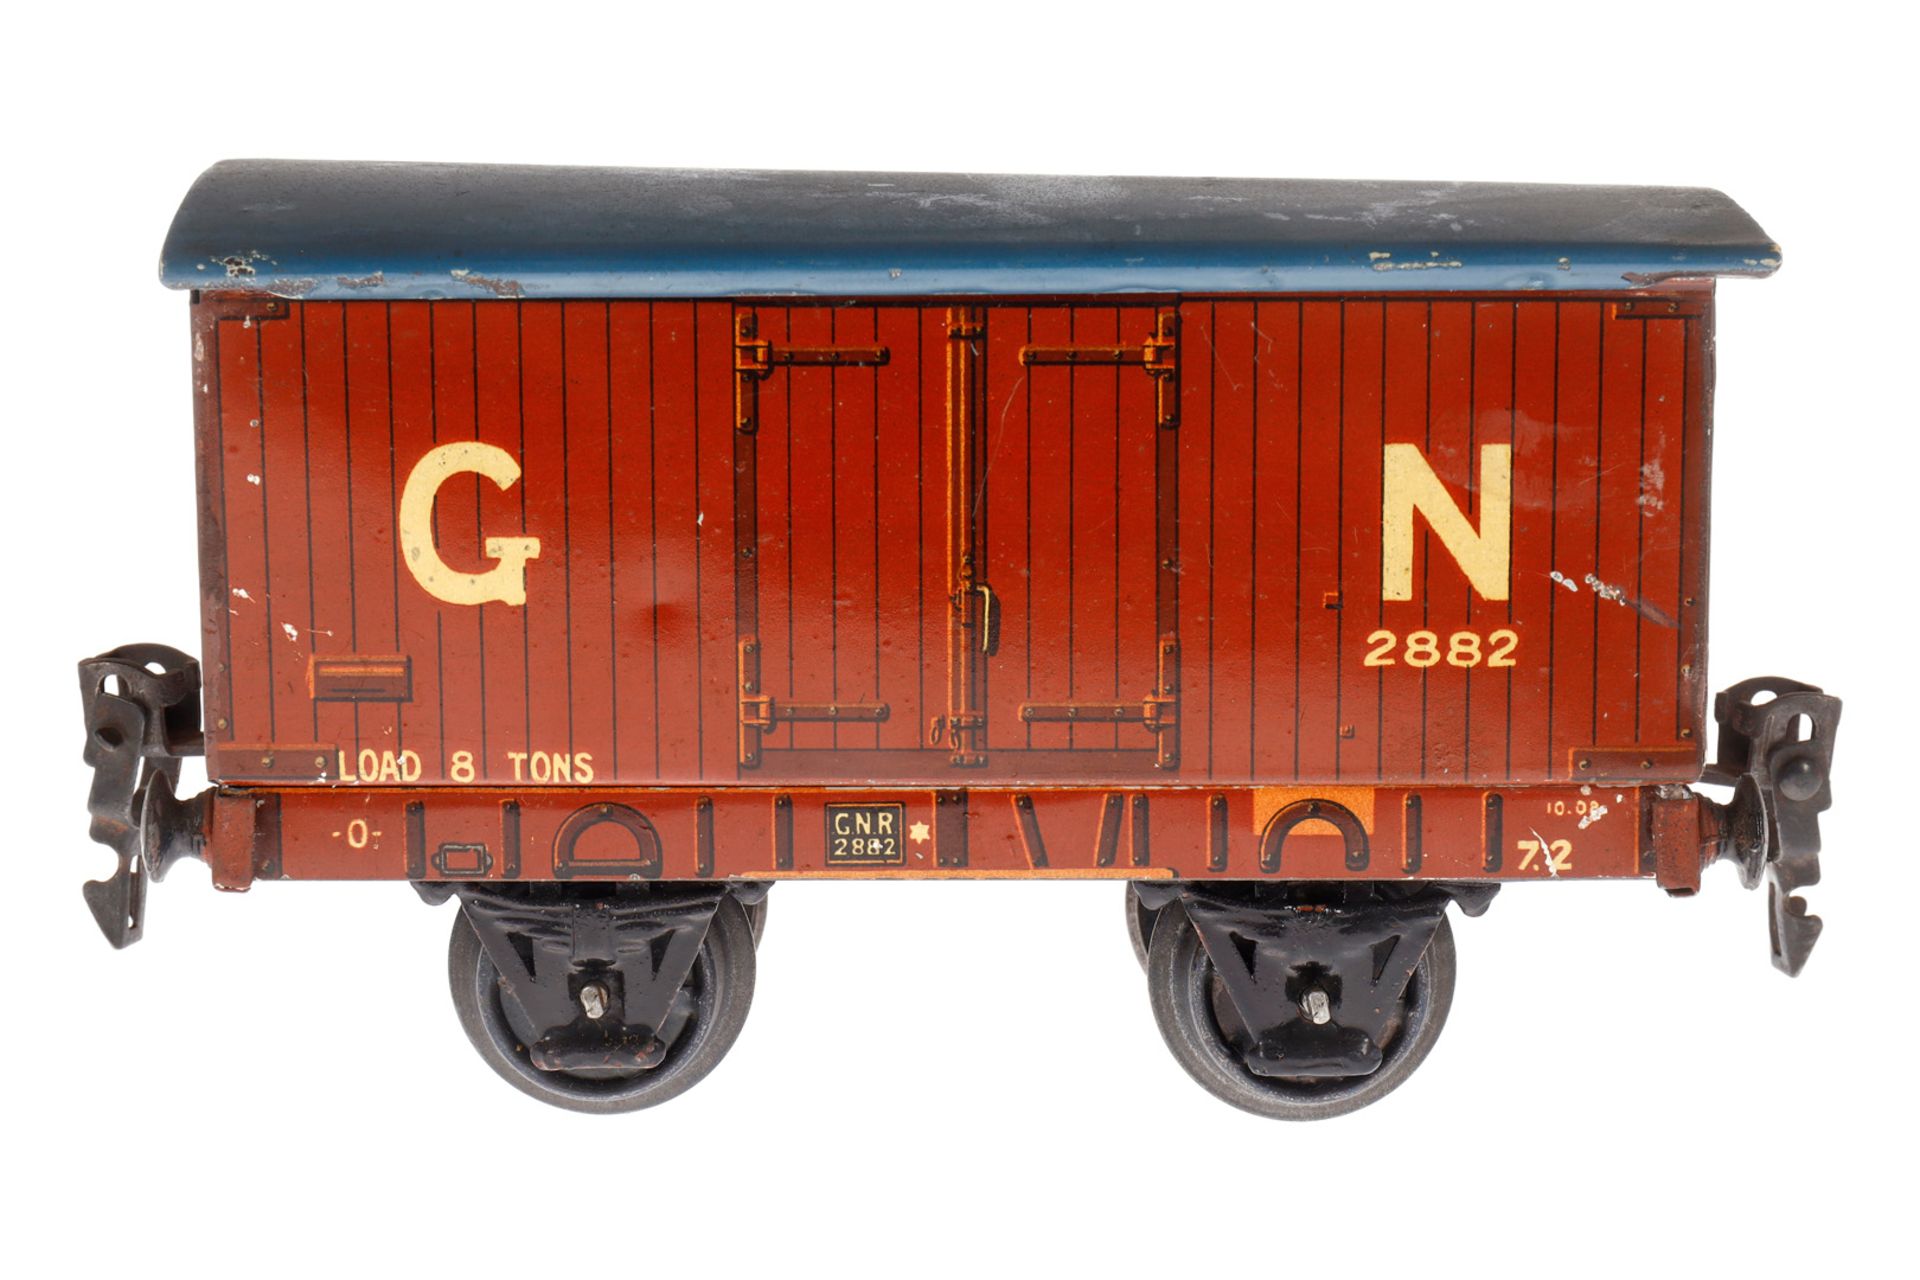 Märklin engl. ged. Güterwagen 2882 GN, Spur 0, CL, LS tw ausgeb., gealterter Lack, L 14,5, Z 3